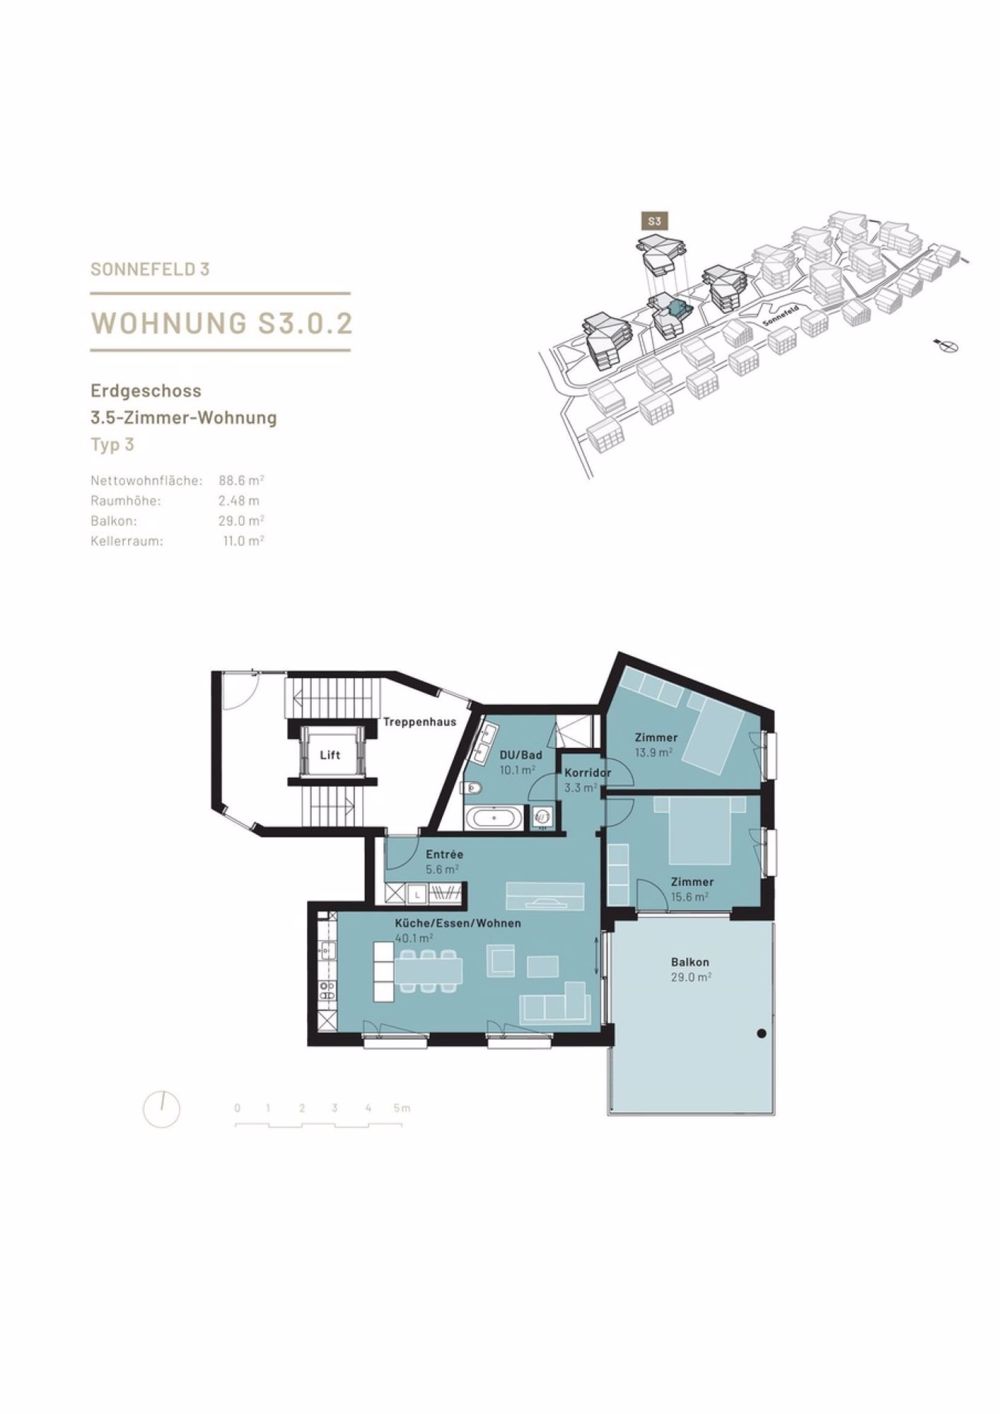 Grundriss 3.5 Zimmer-Wohnung Hochparterre S3.0.2